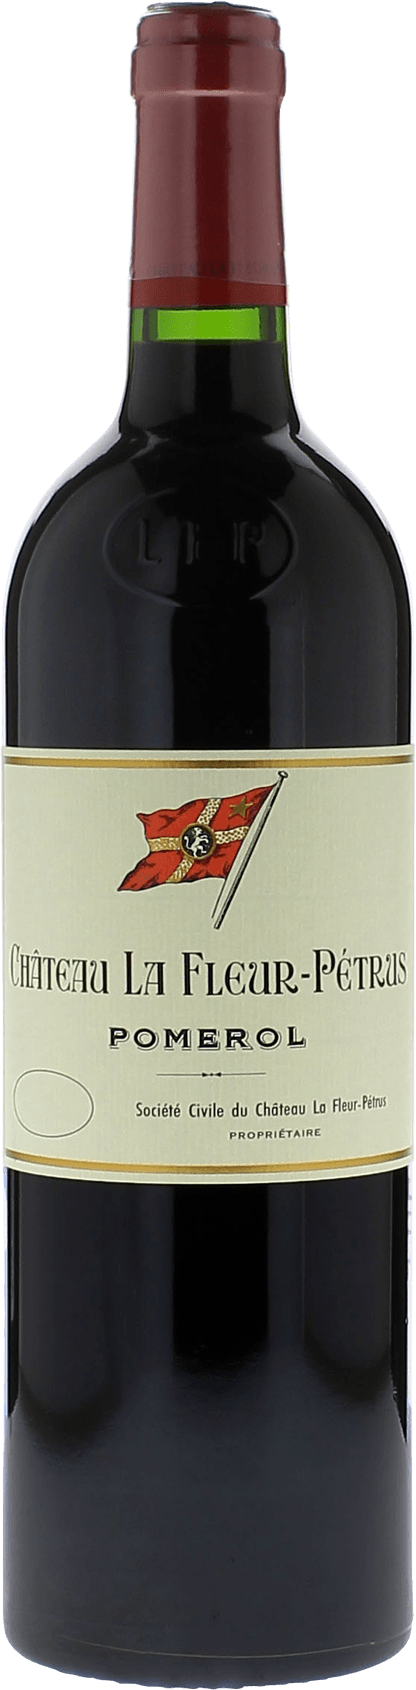 La fleur petrus 2020  Pomerol, Bordeaux rouge